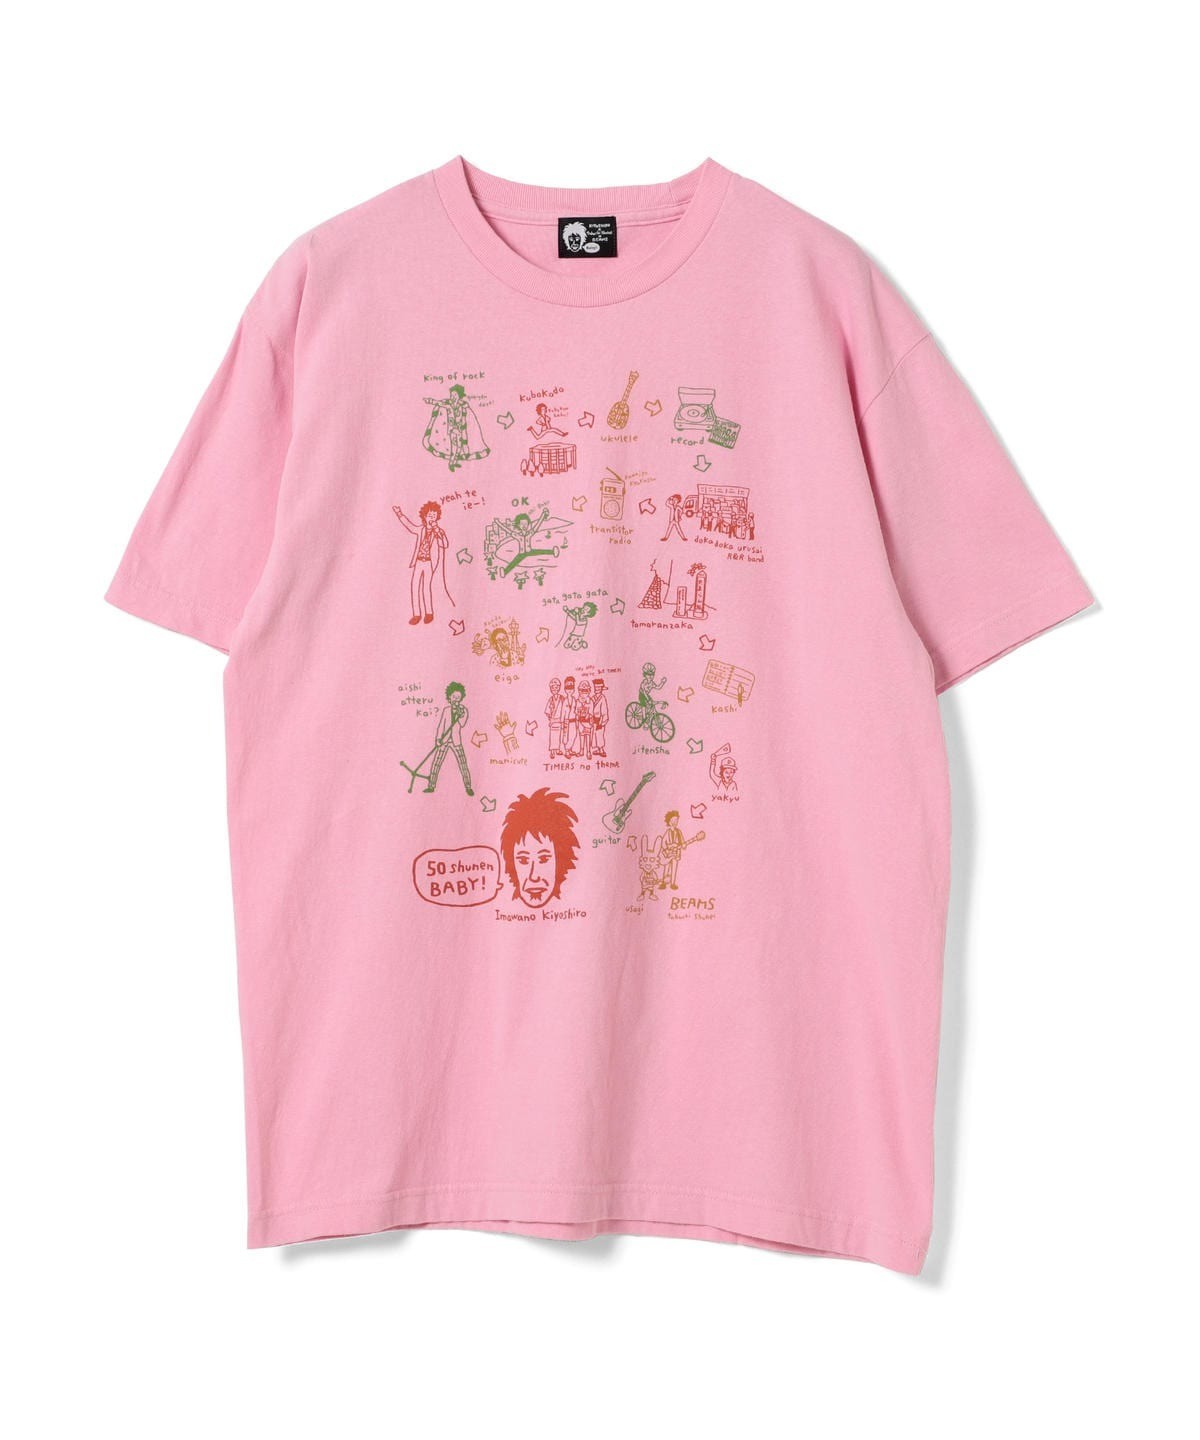 売れ筋公式店 忌野清志郎 ラフィータフィー Tシャツ M ピンク